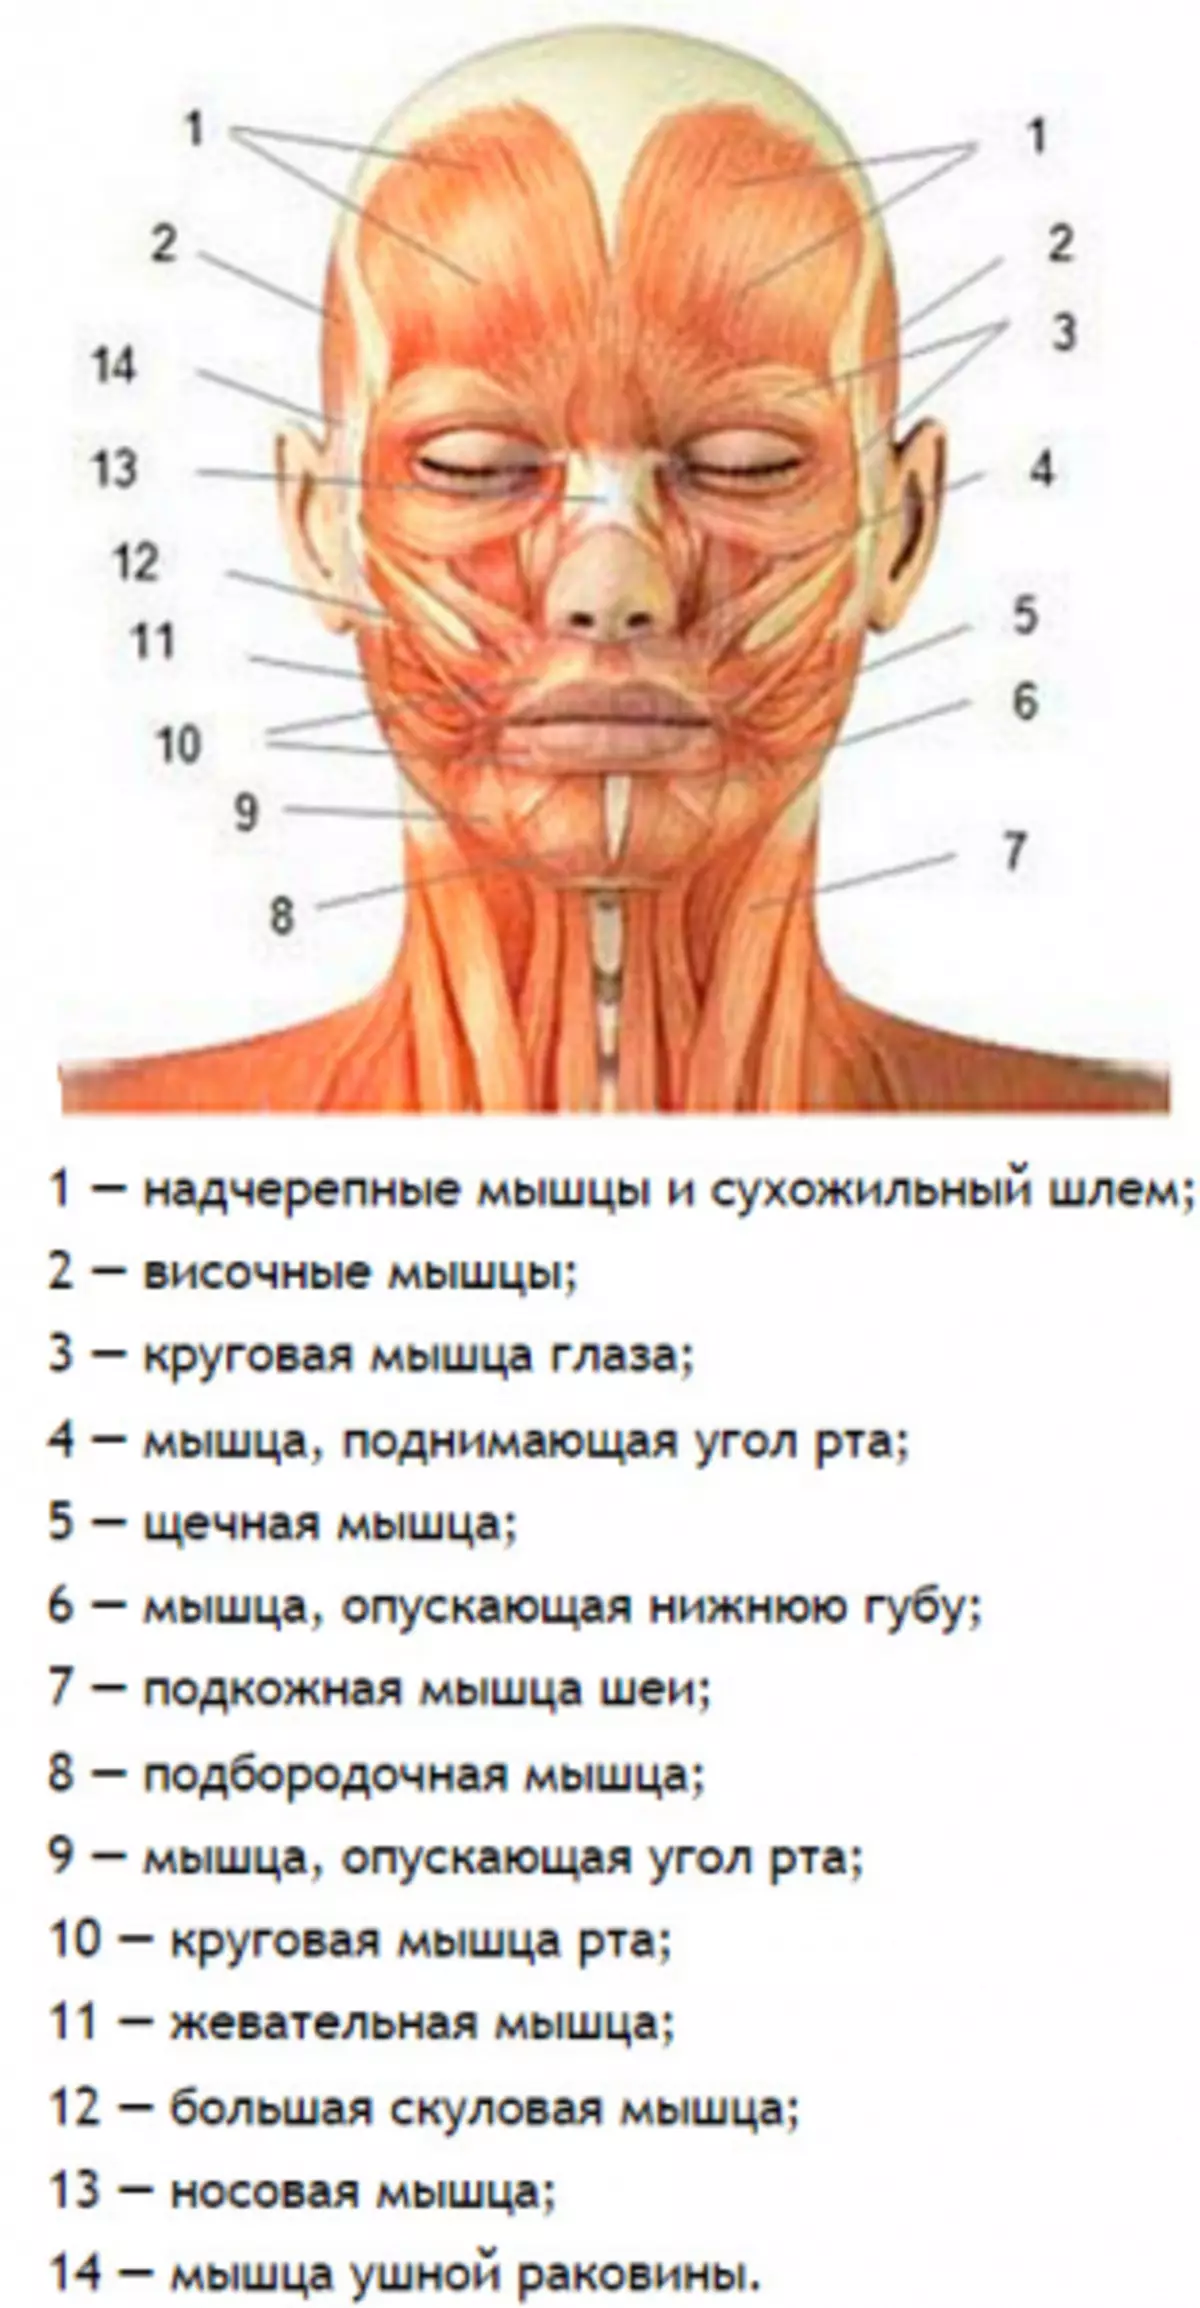 Мышцы лица и шеи анатомия для косметологов